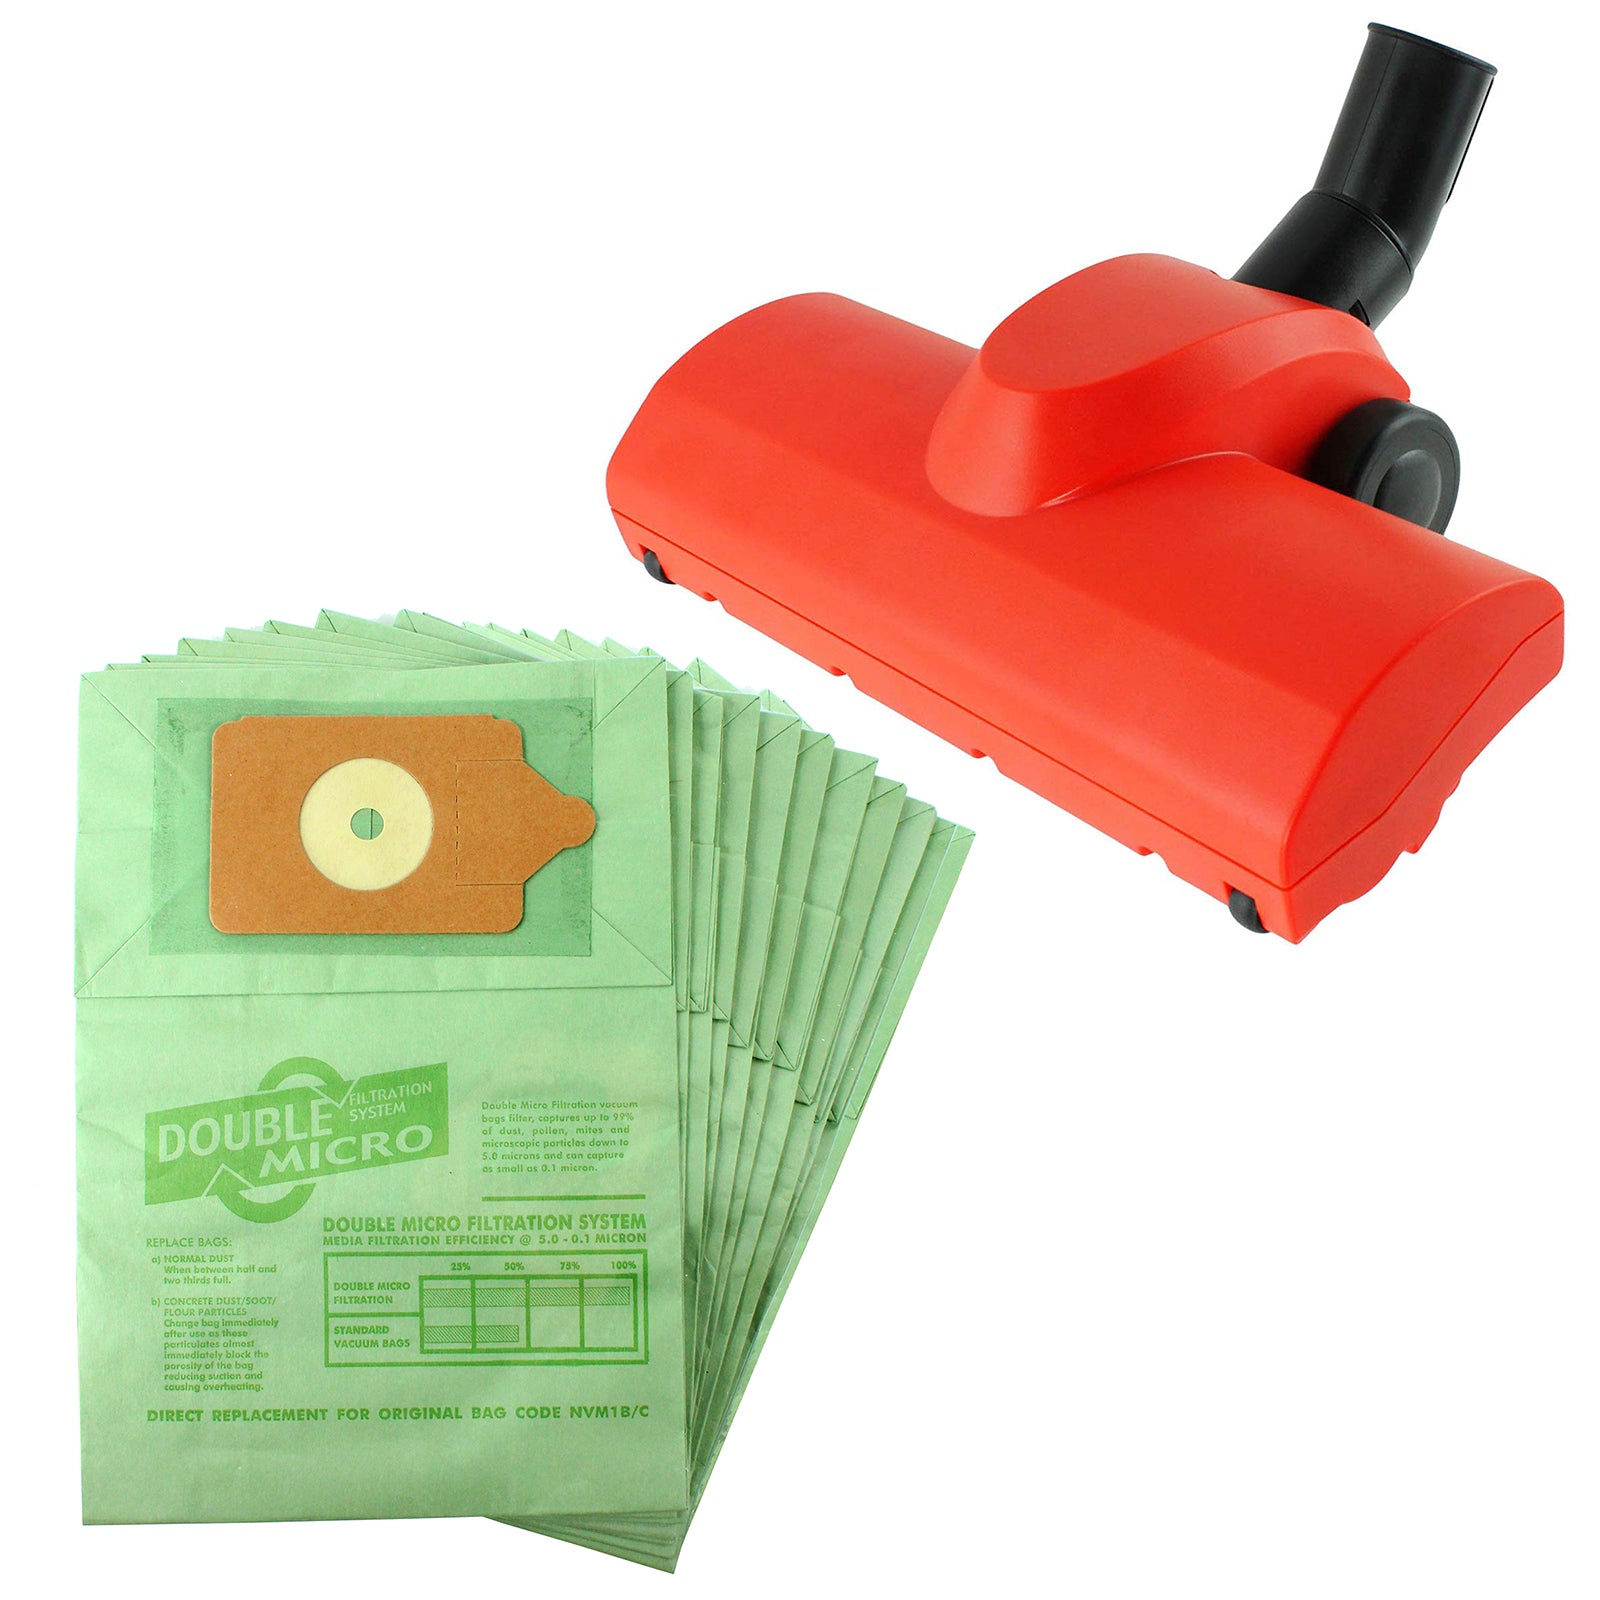 Airo Turbine Carpet Brush Tool & 10 Paper Dust Bags for NUMATIC HETTY Vacuum Cleaner